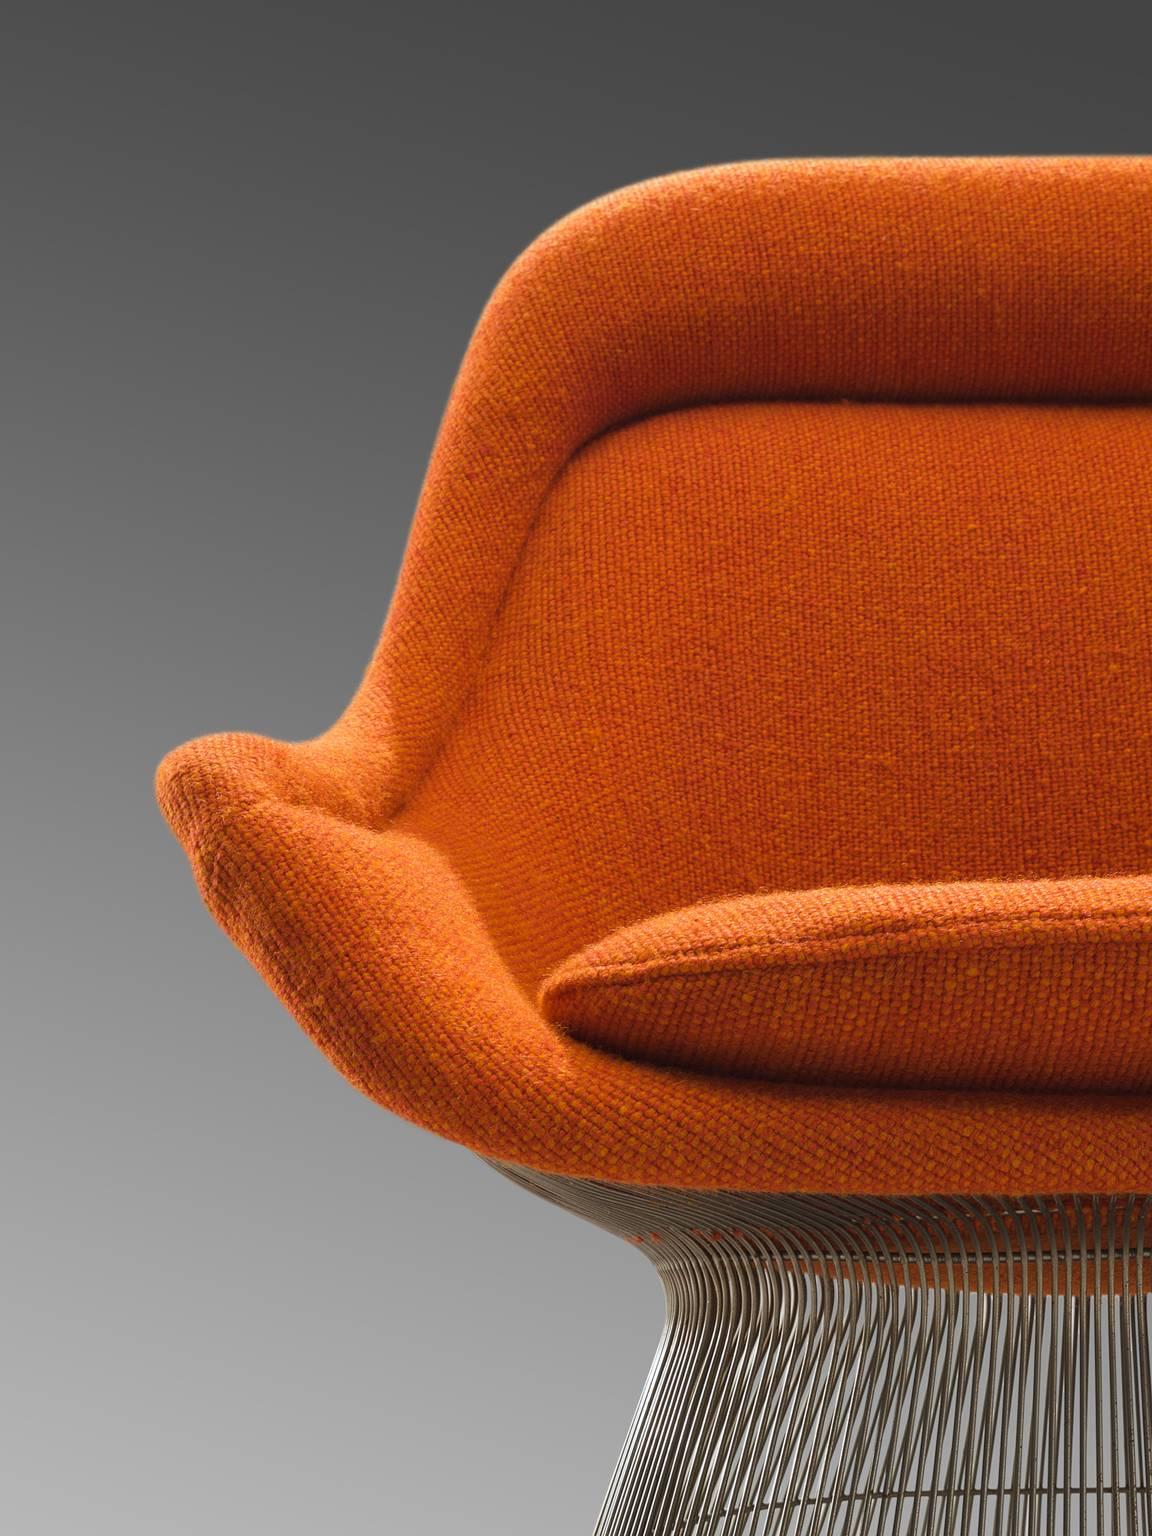 Steel Warren Platner Easy Chair in Original Orange Fabric